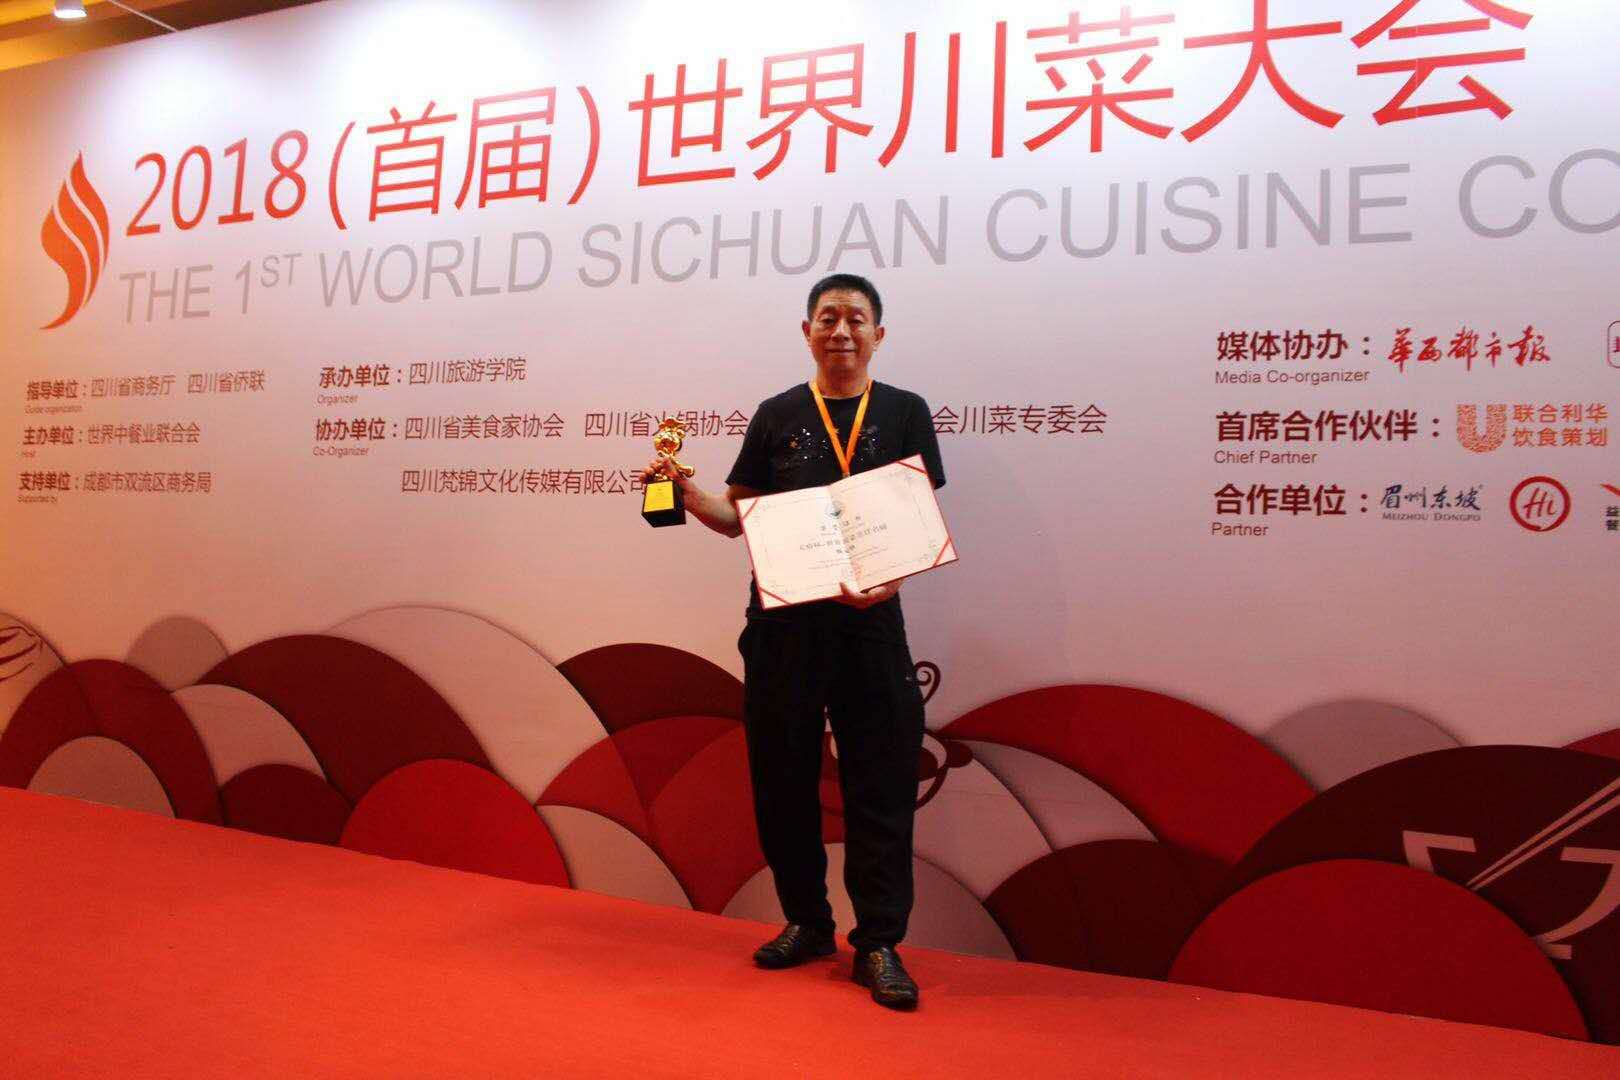 中华美食工匠杨元华中国烹饪大师国家一级评委